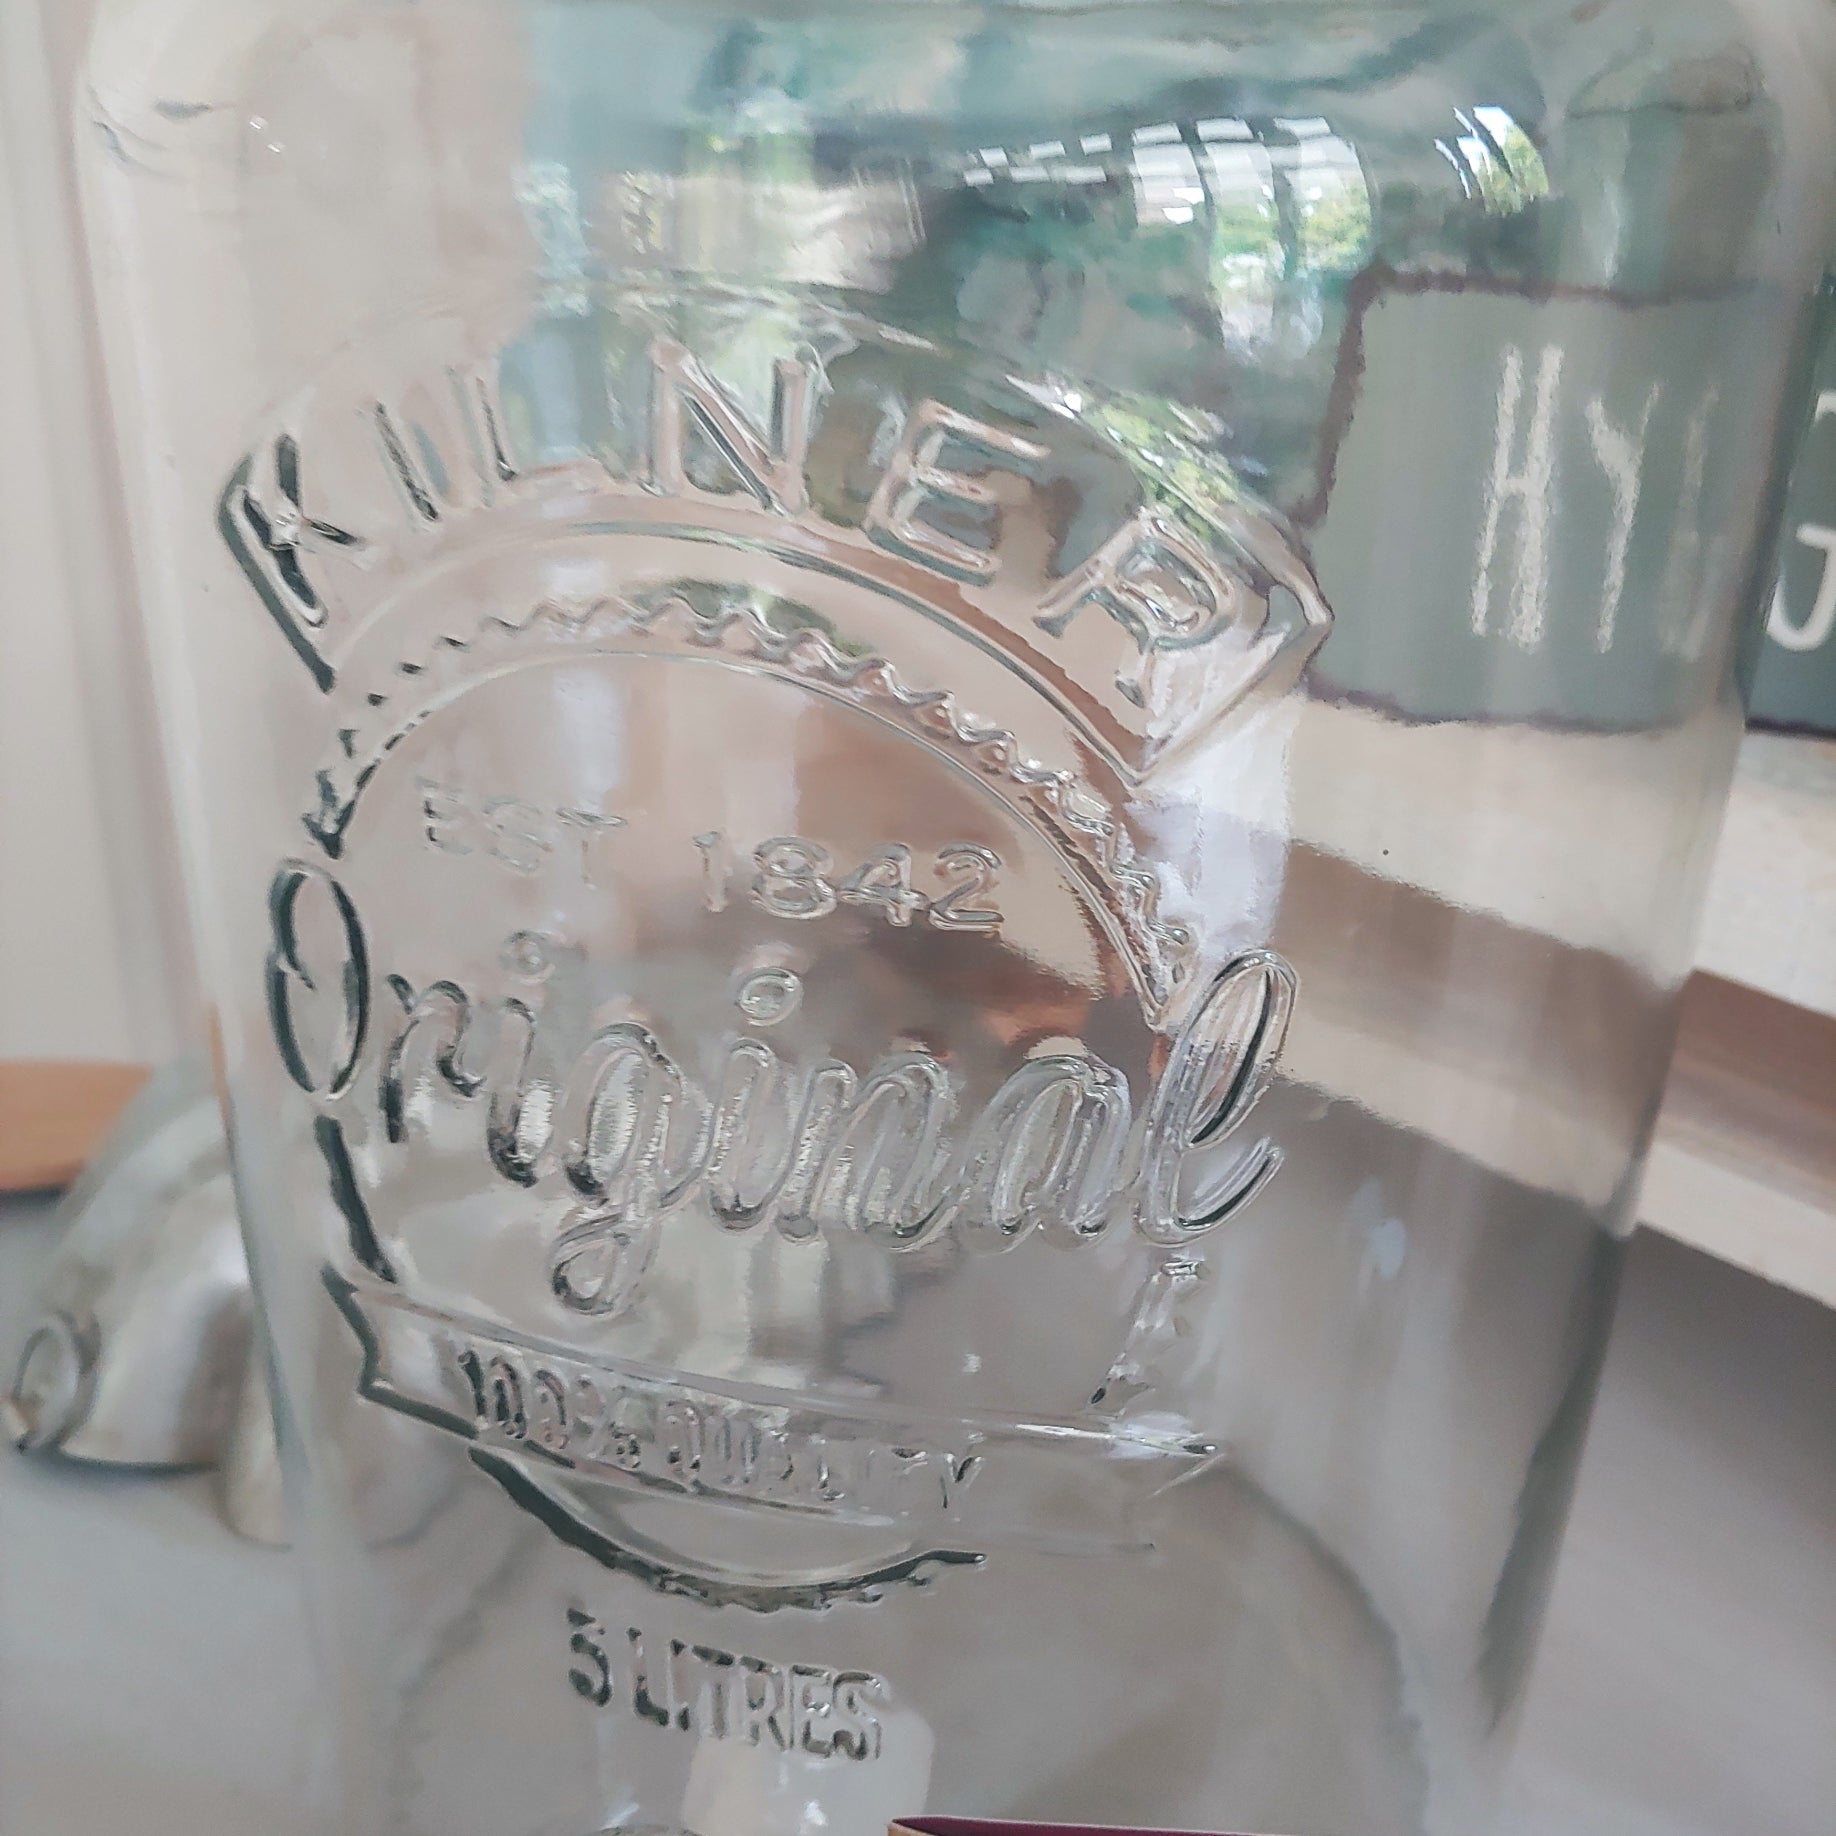 Chic Antique Getränkespender im Glas mit Hahn 5,5 Liter